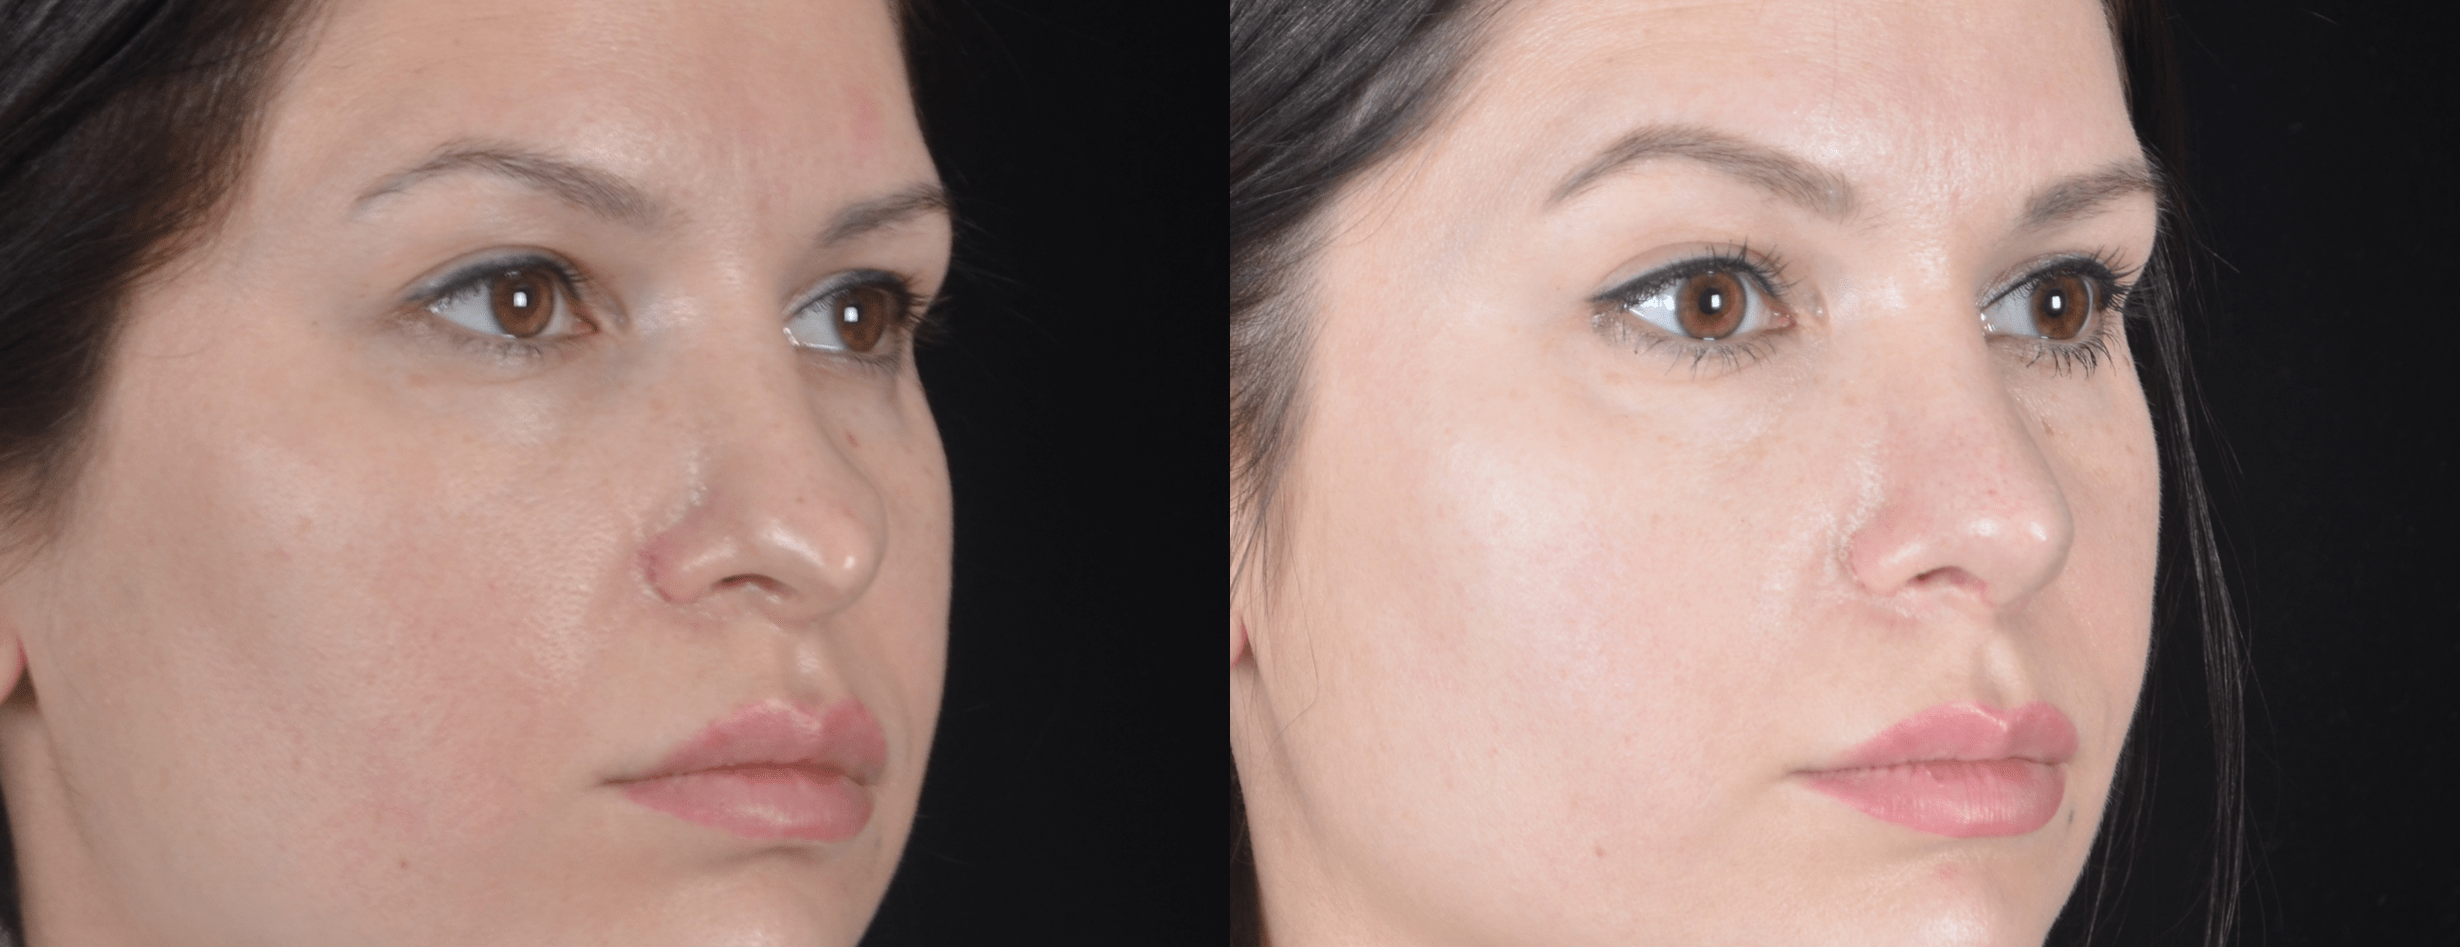 Вторичная ринопластика кончика носа  фото до и после